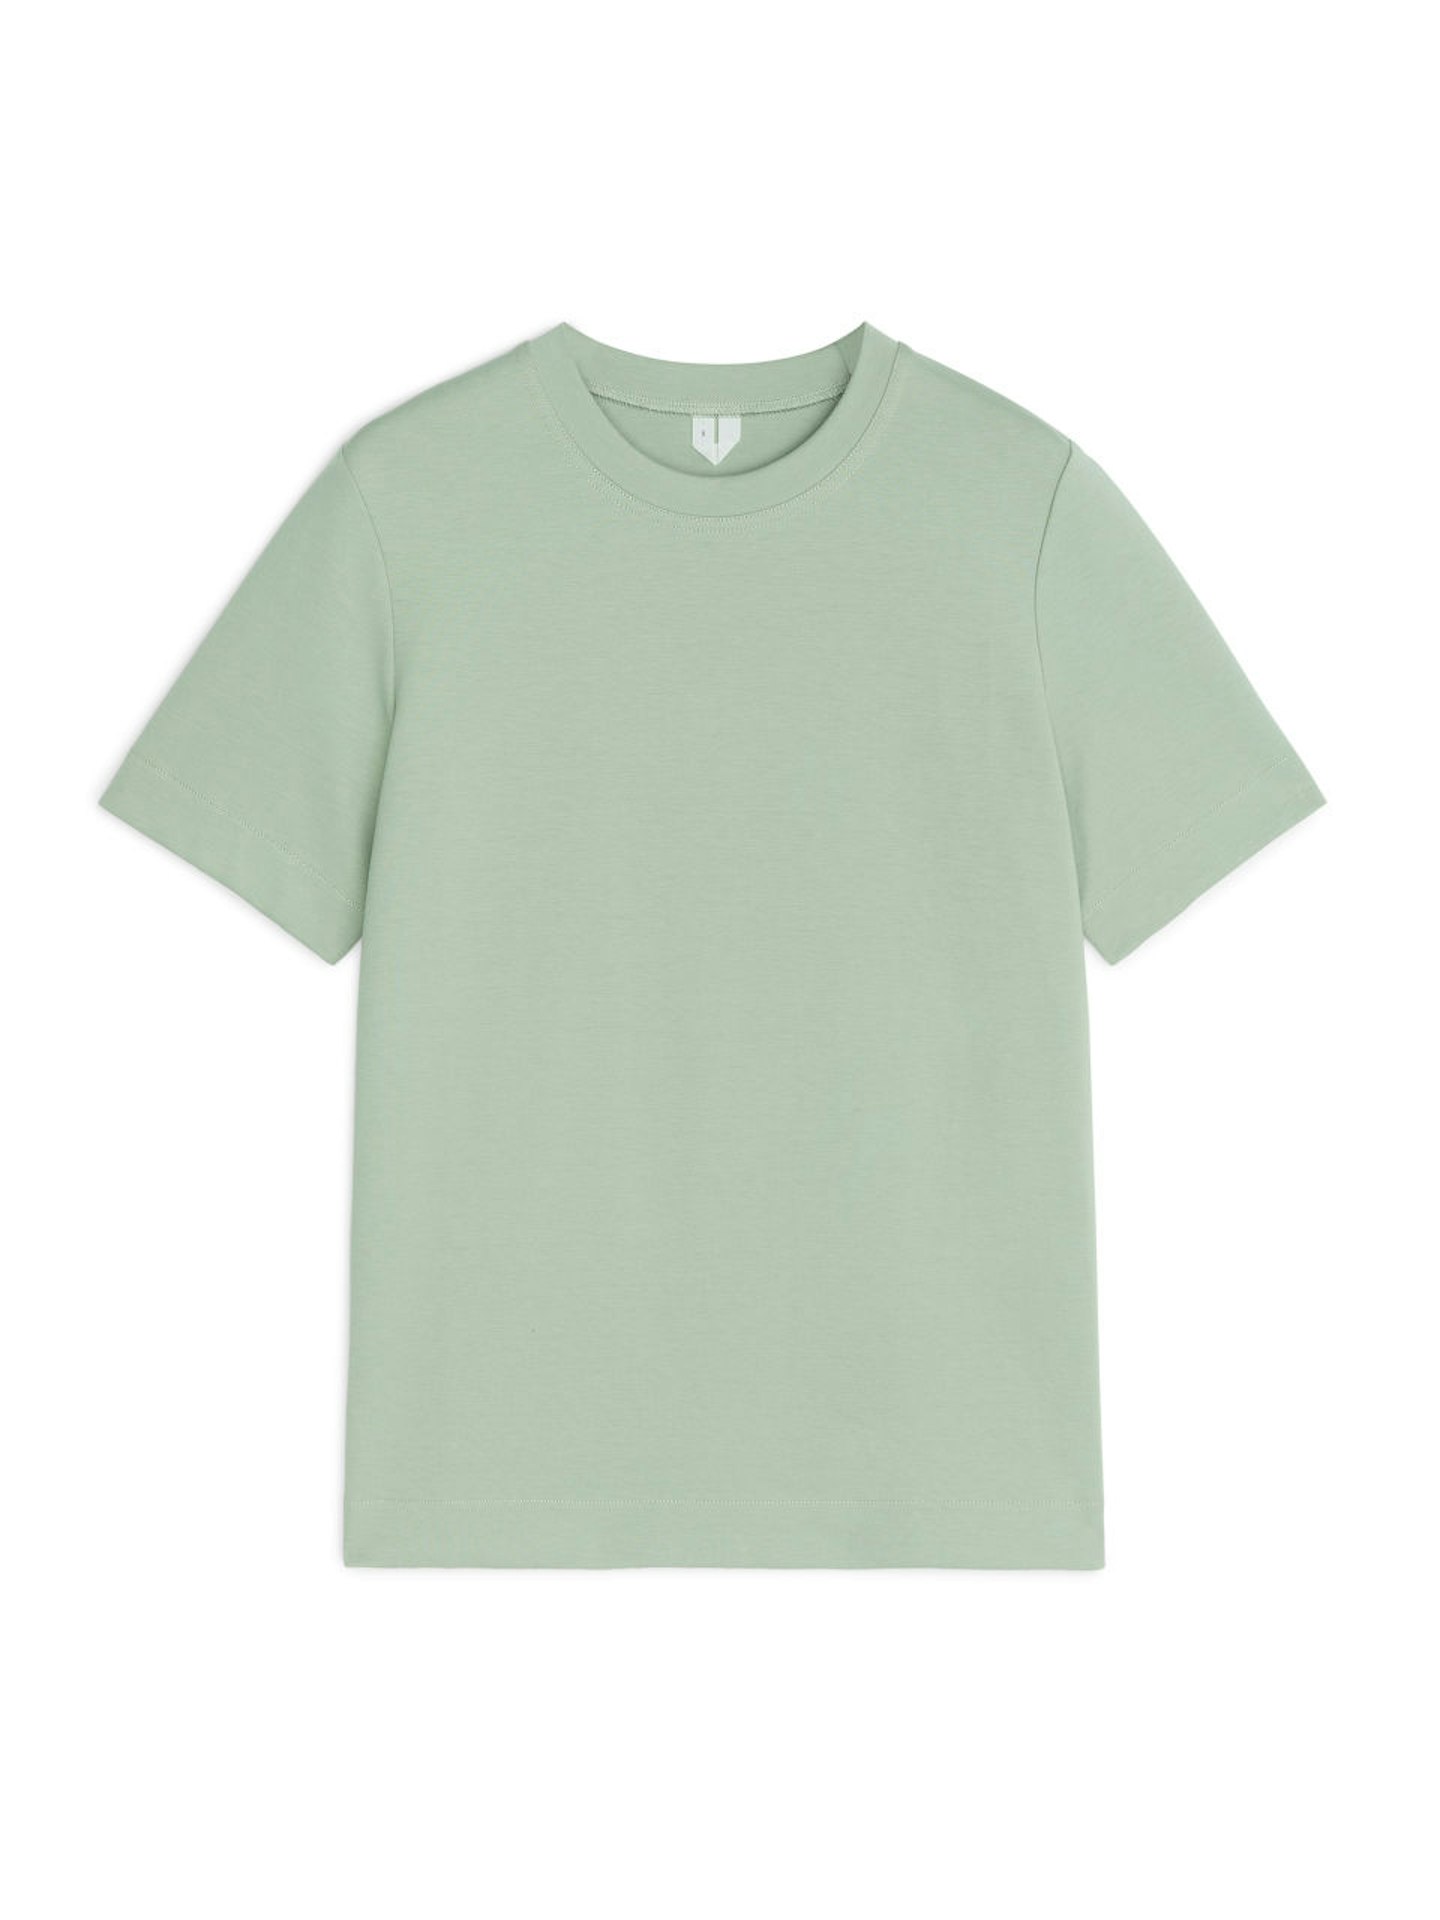 Arket, Heavyweight T-Shirt, £35